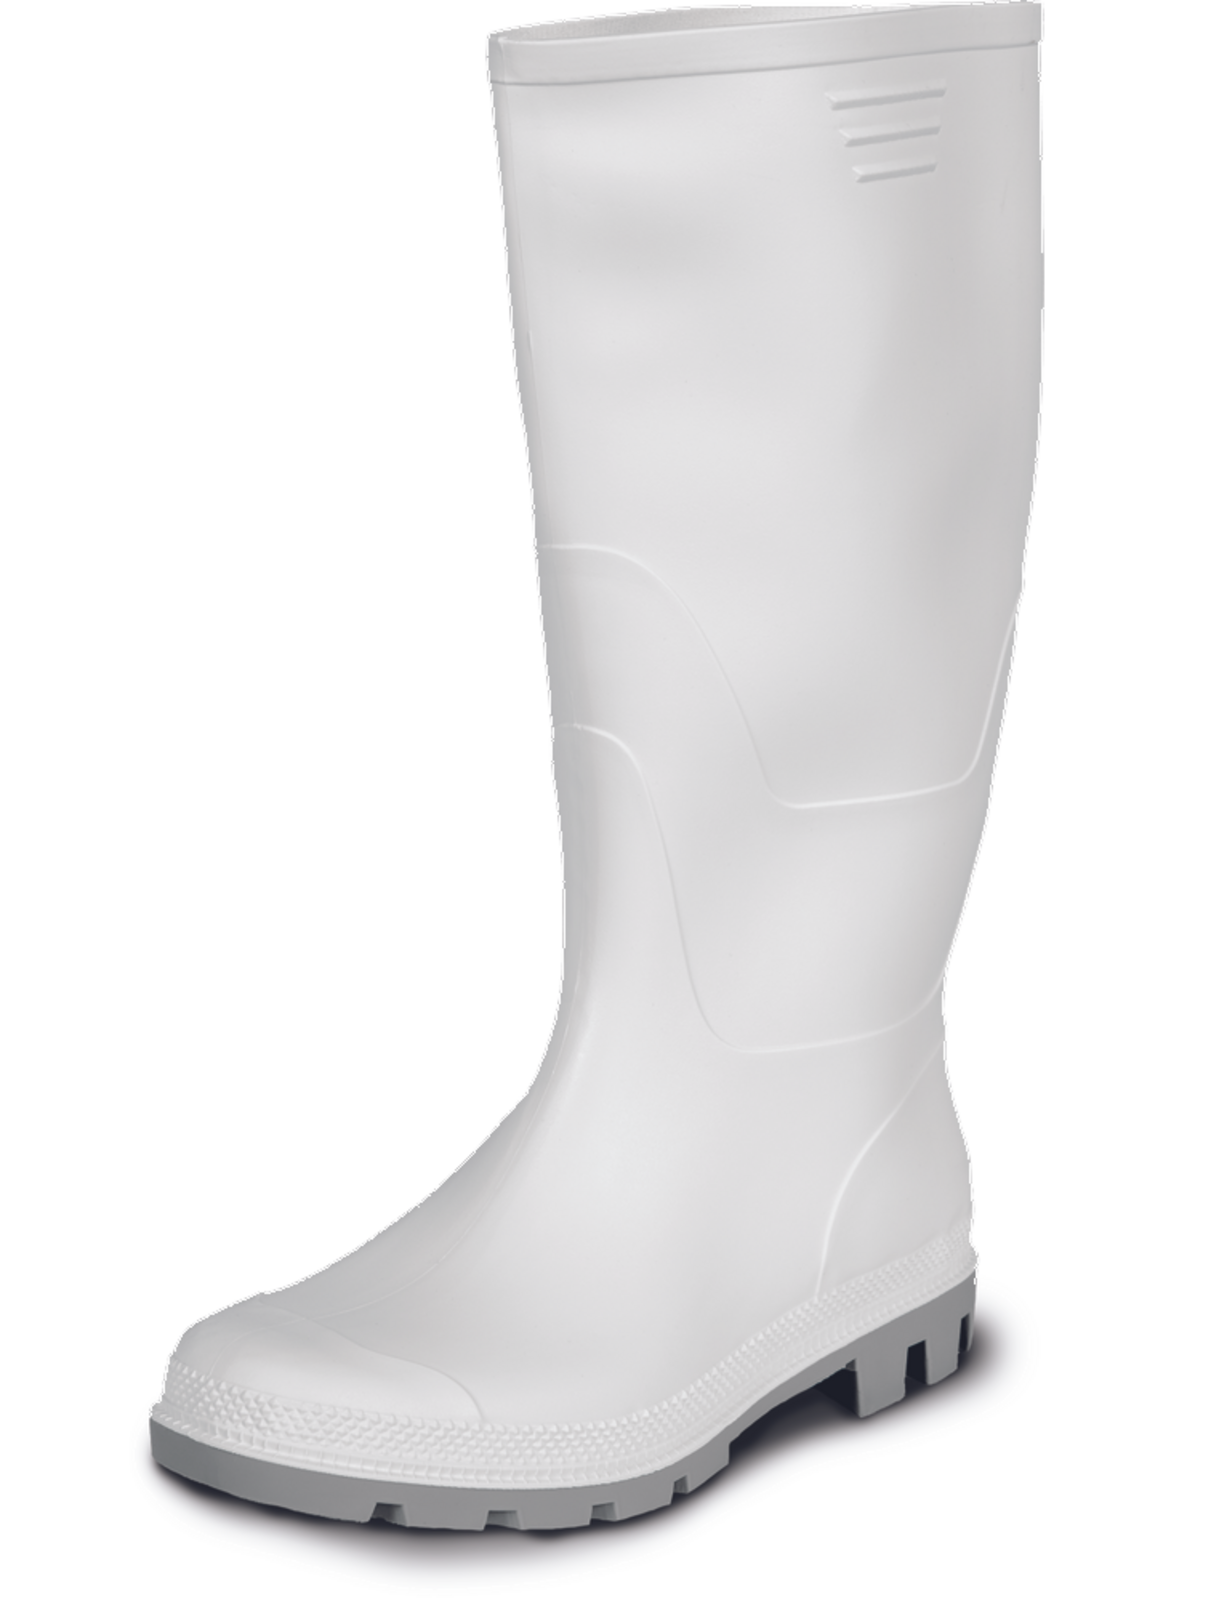 Gumáky Boots Ginocchio PVC - veľkosť: 44, farba: biela